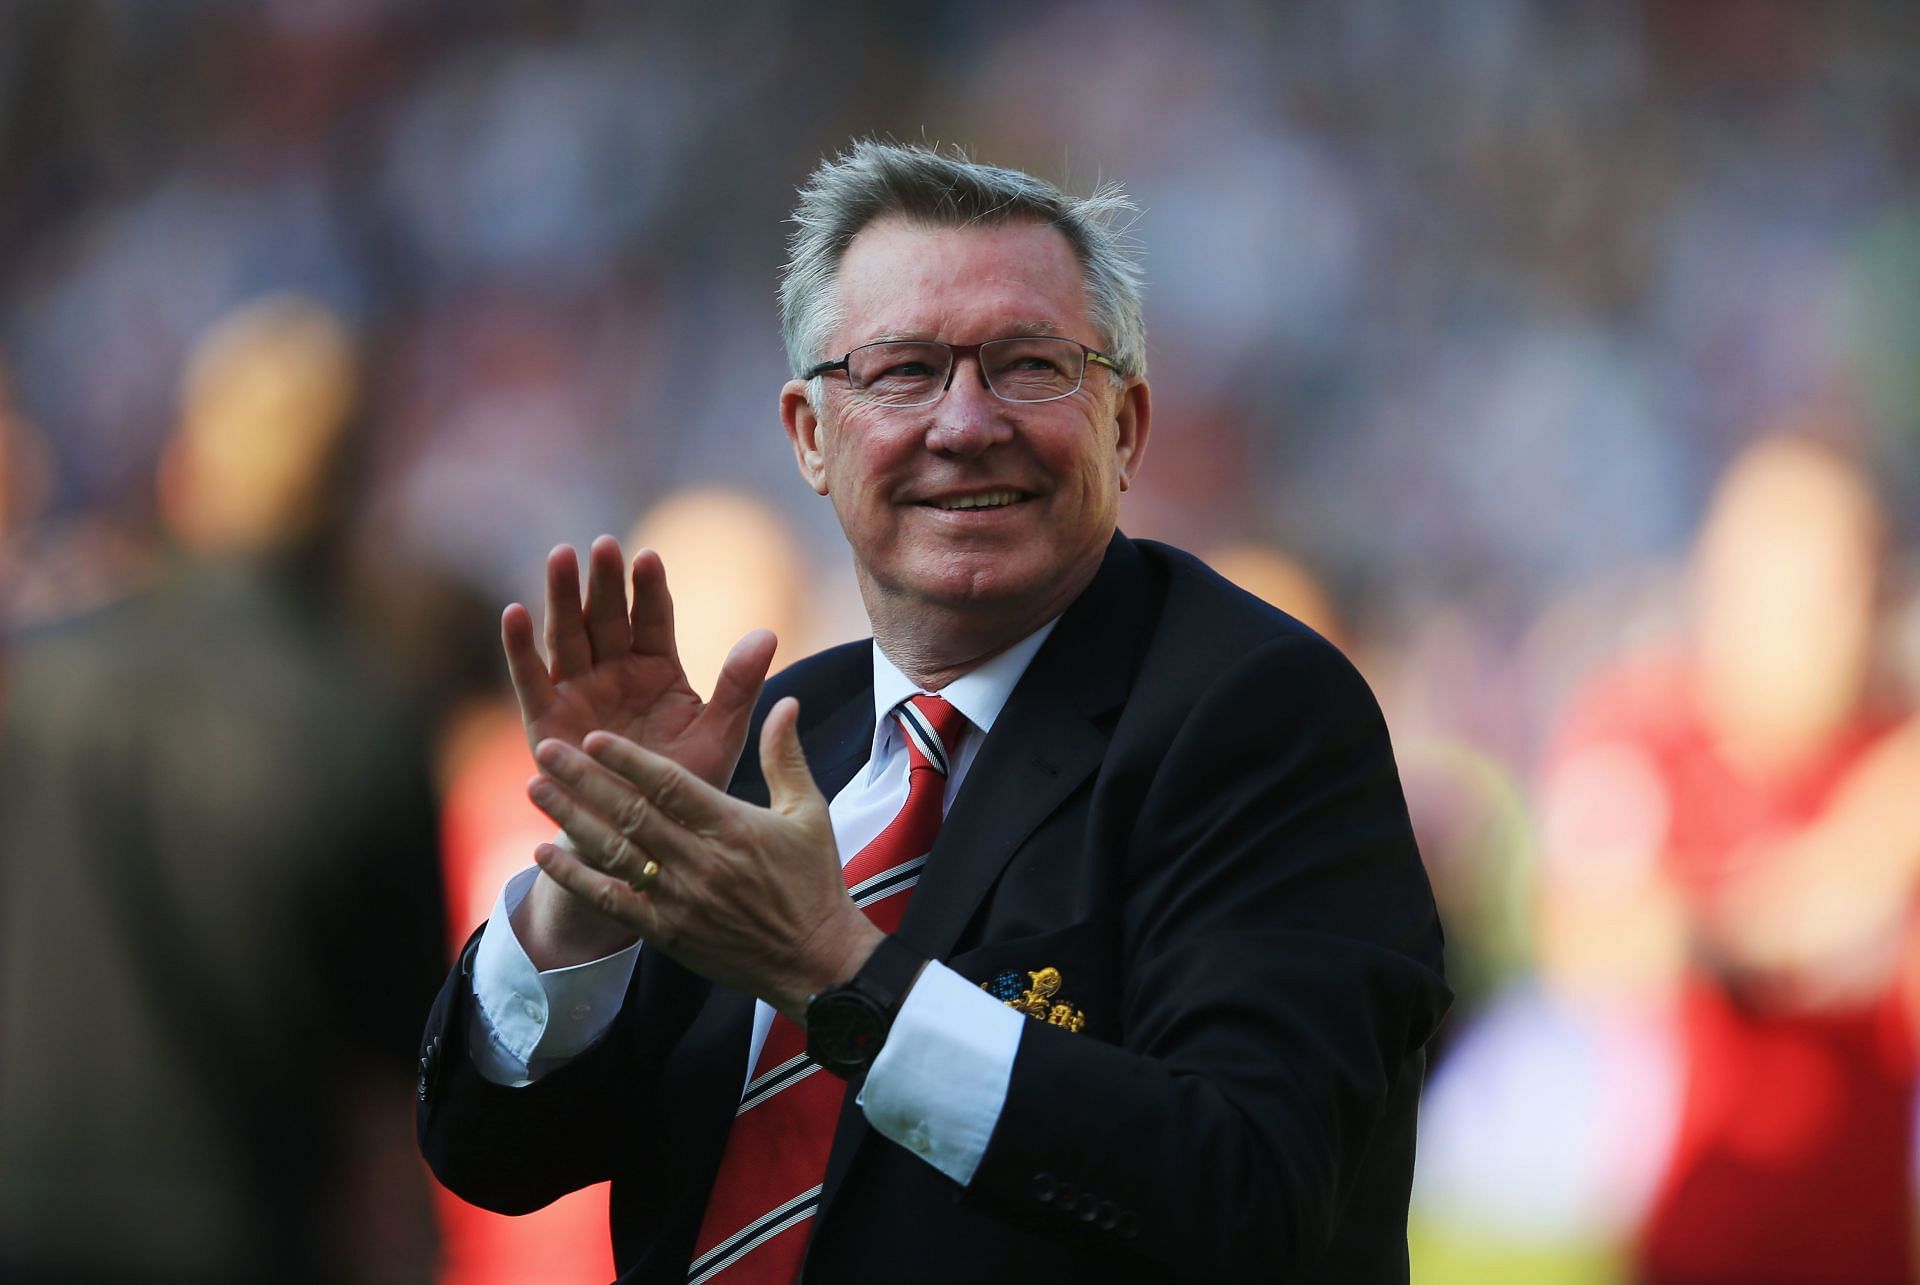 Sir Alex Ferguson led Manchester United to 13 Premier League titles